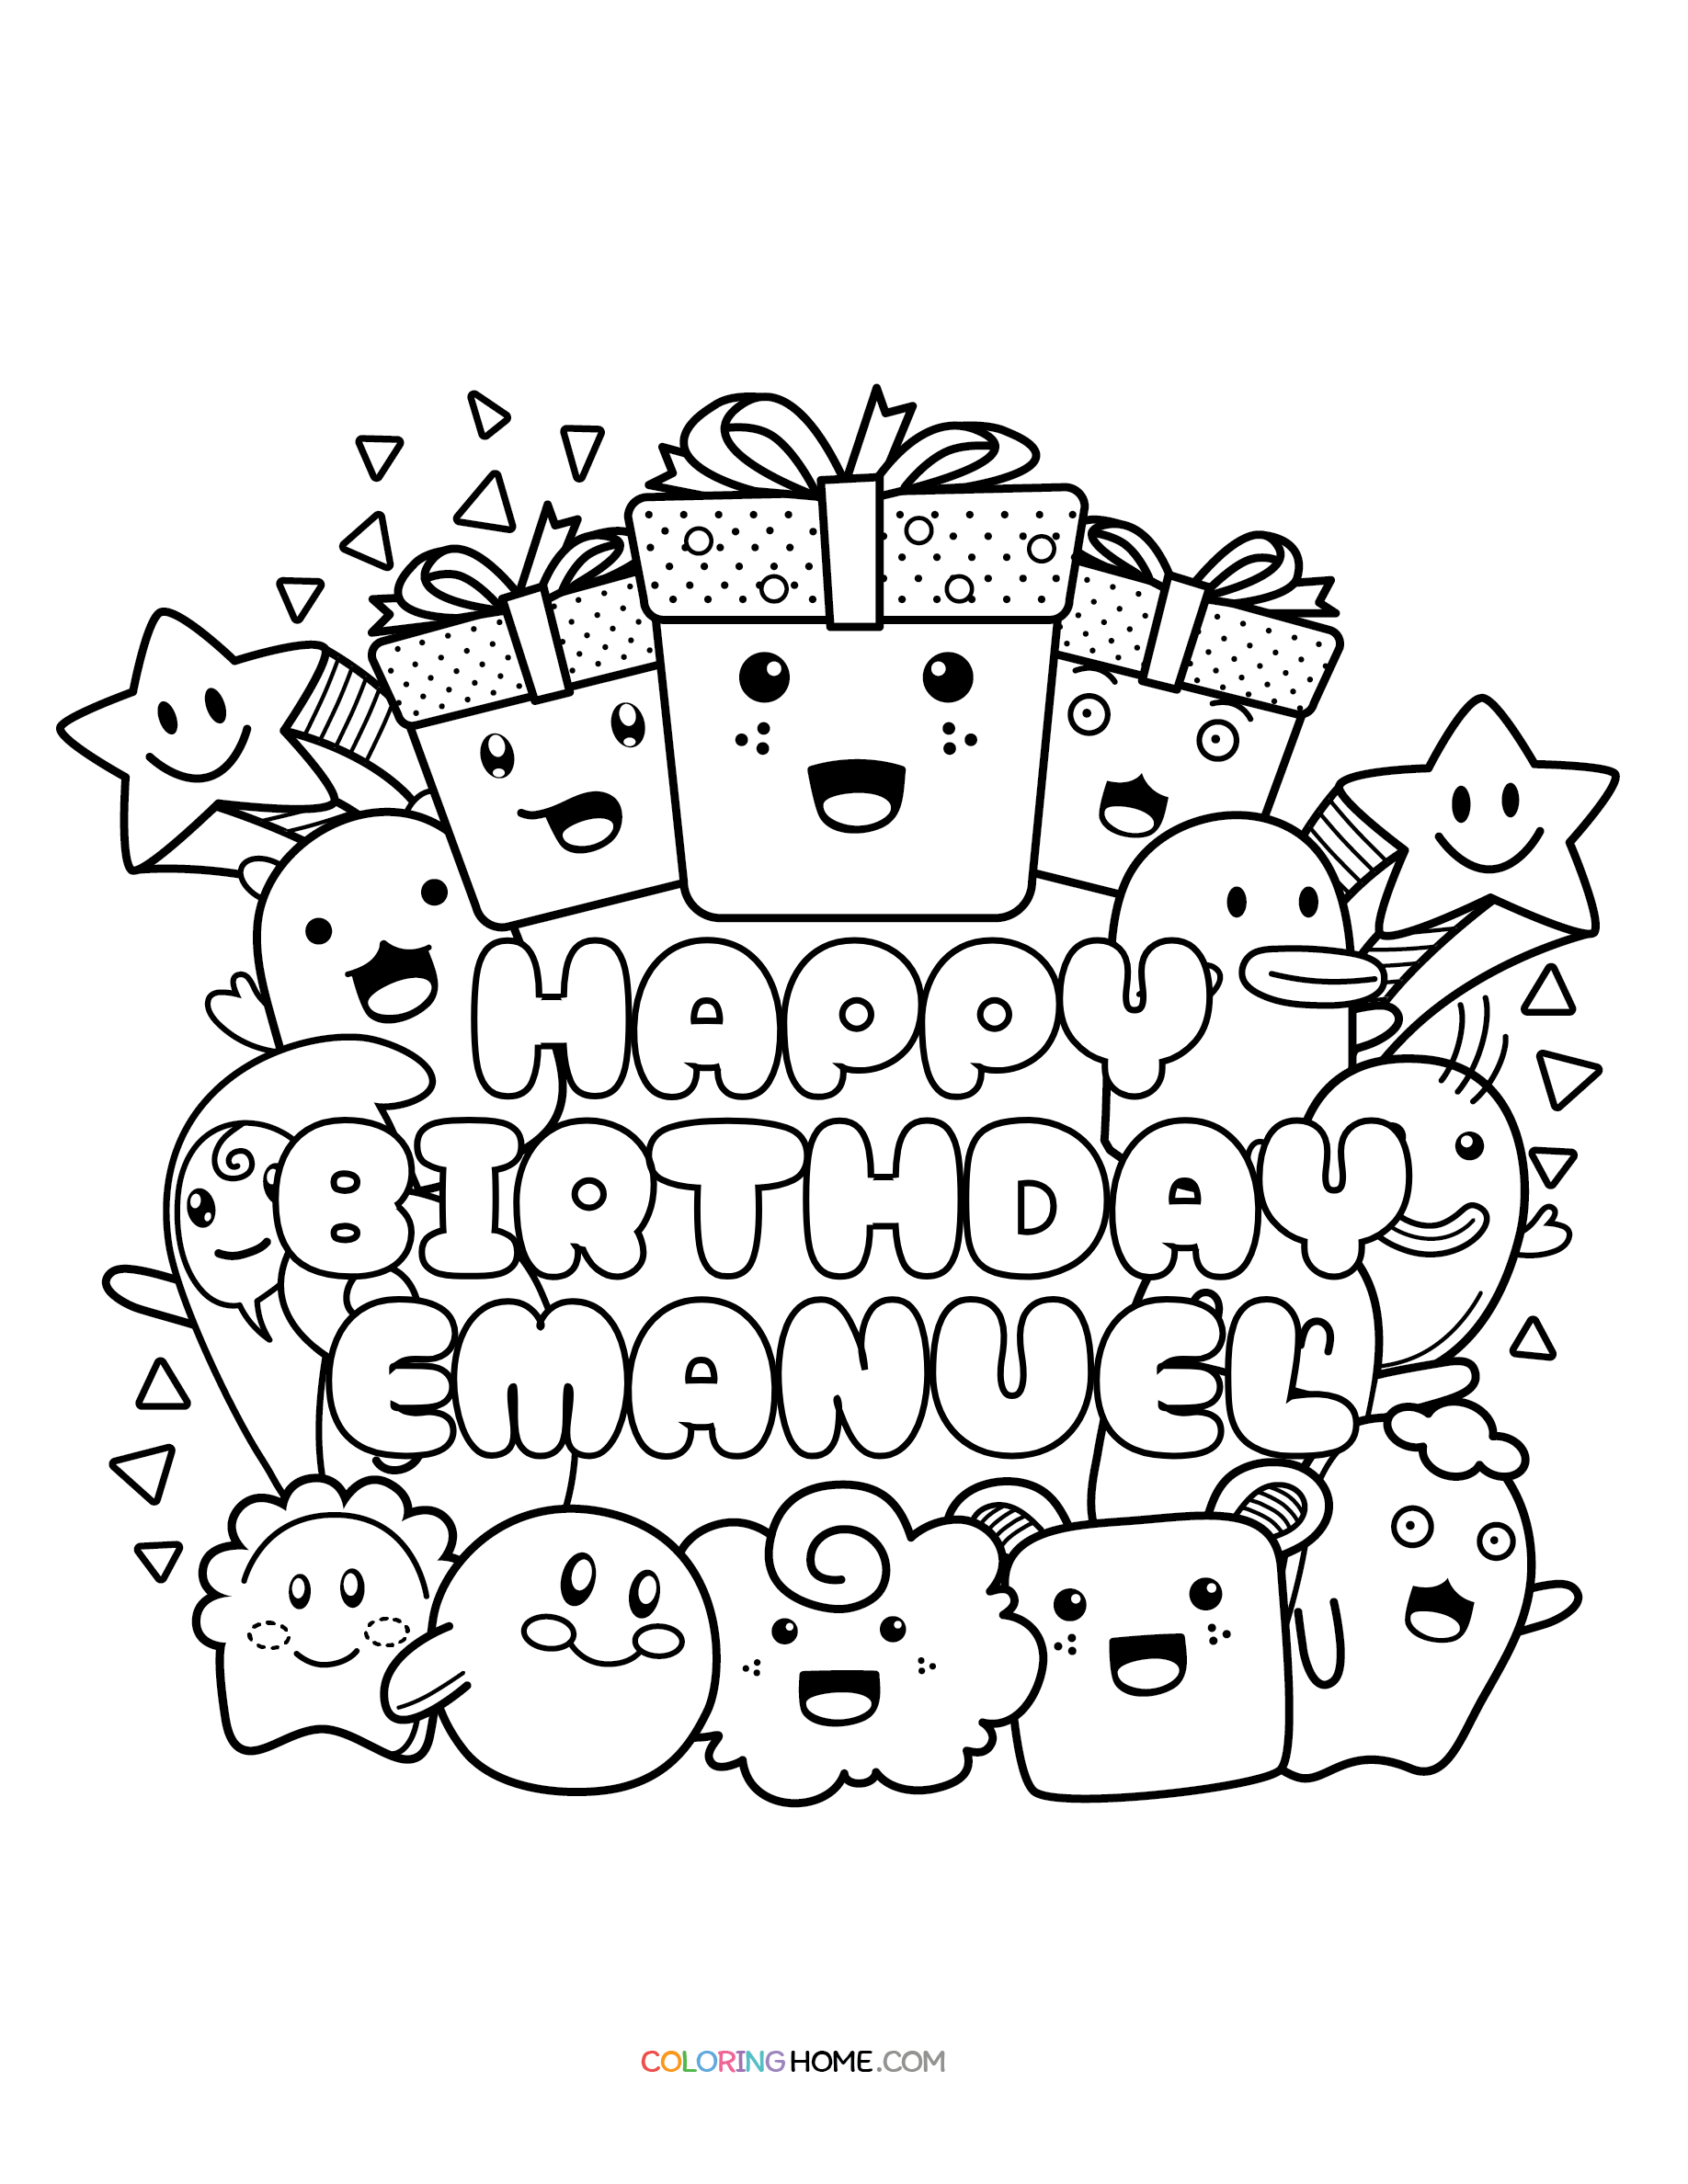 Happy Birthday Emanuel coloring page